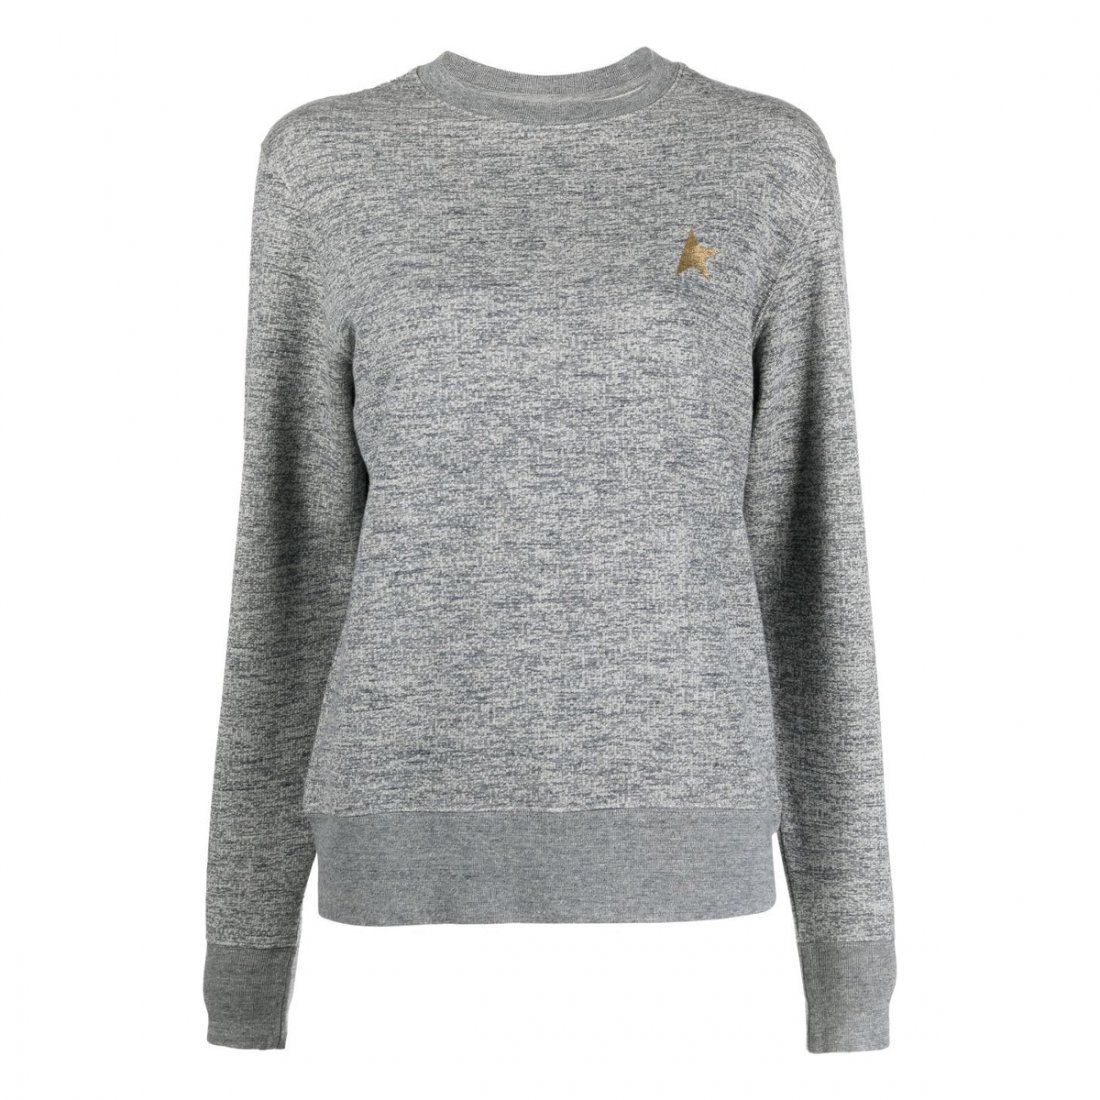 Golden Goose Deluxe Brand - Sweatshirt 'One Star' pour Femmes